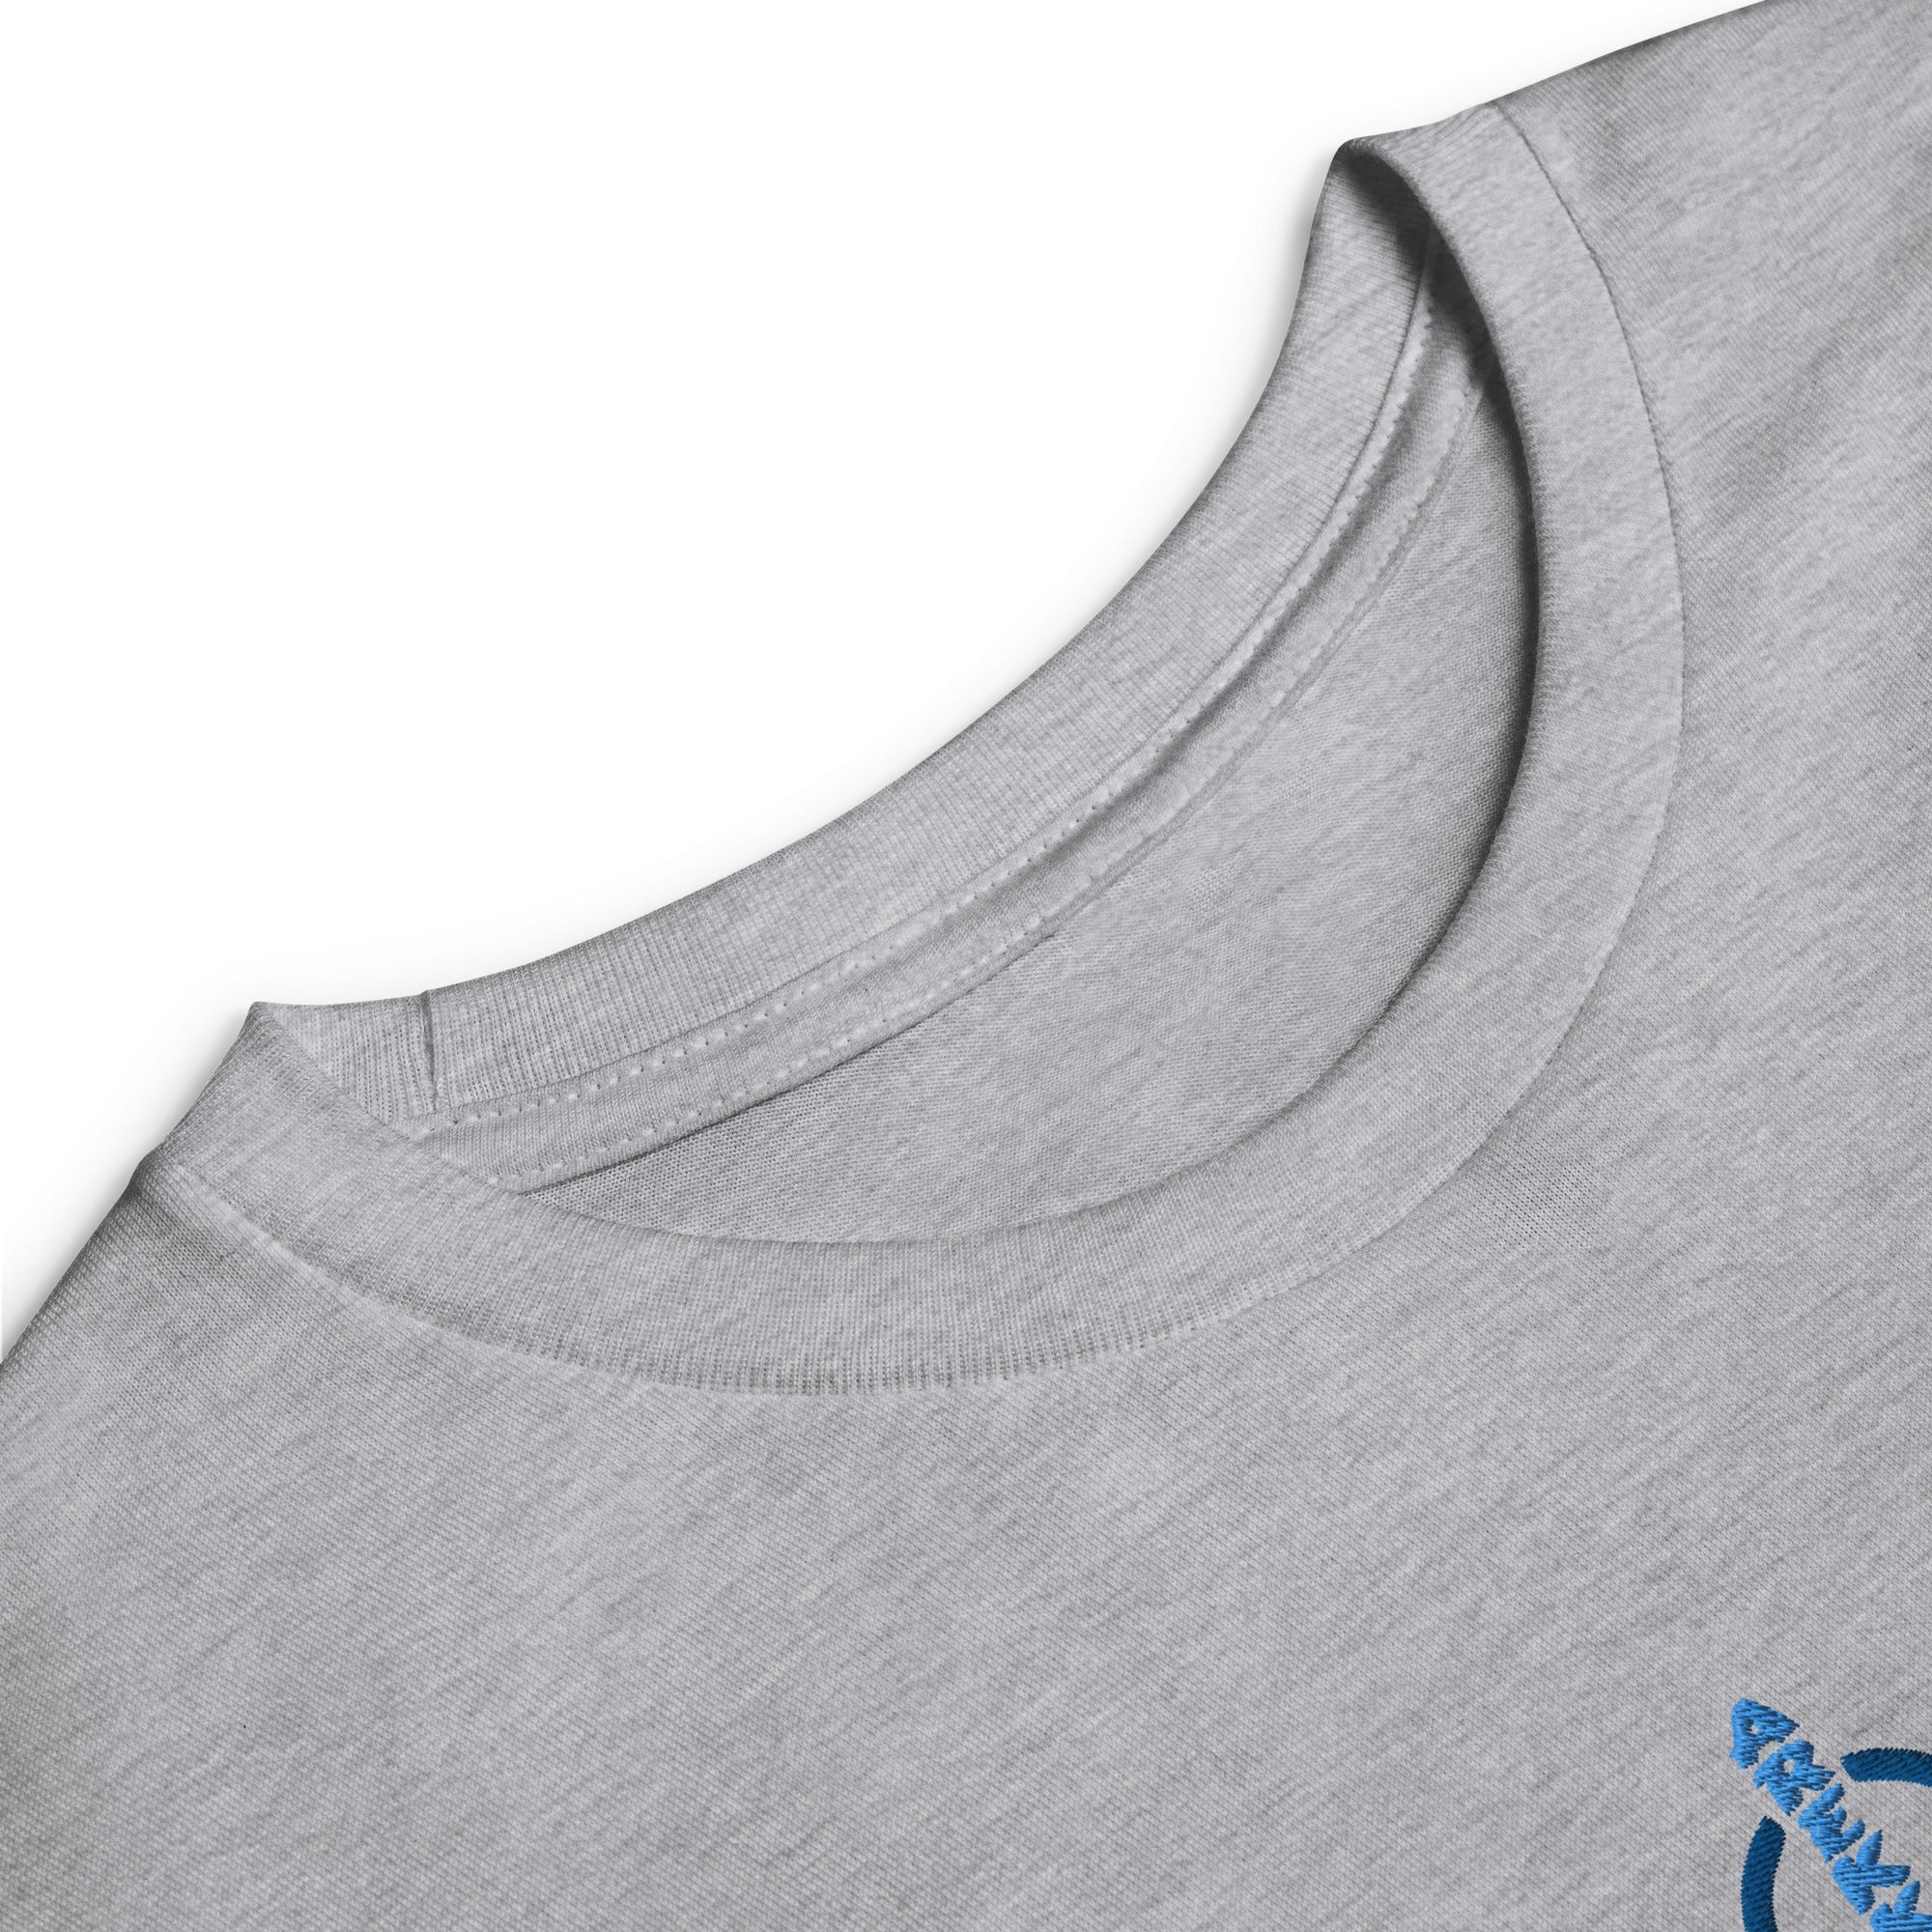 Unisex Youth Long Sleeve Shirt-2